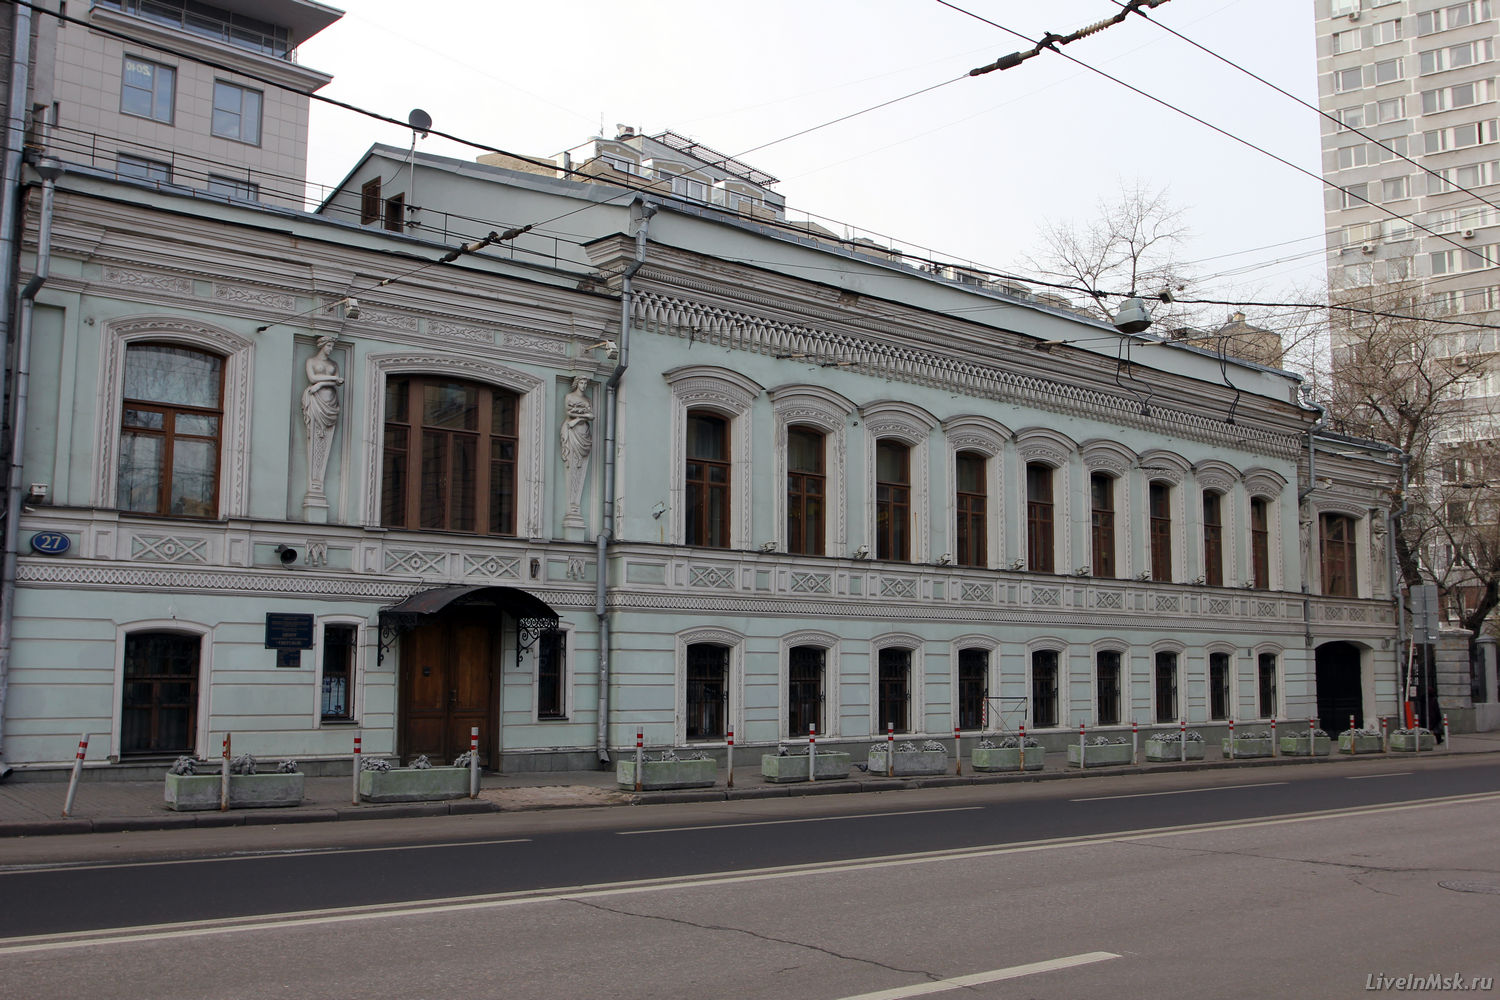 Городская усадьба Григорьева — Писемской, фото 2014 года